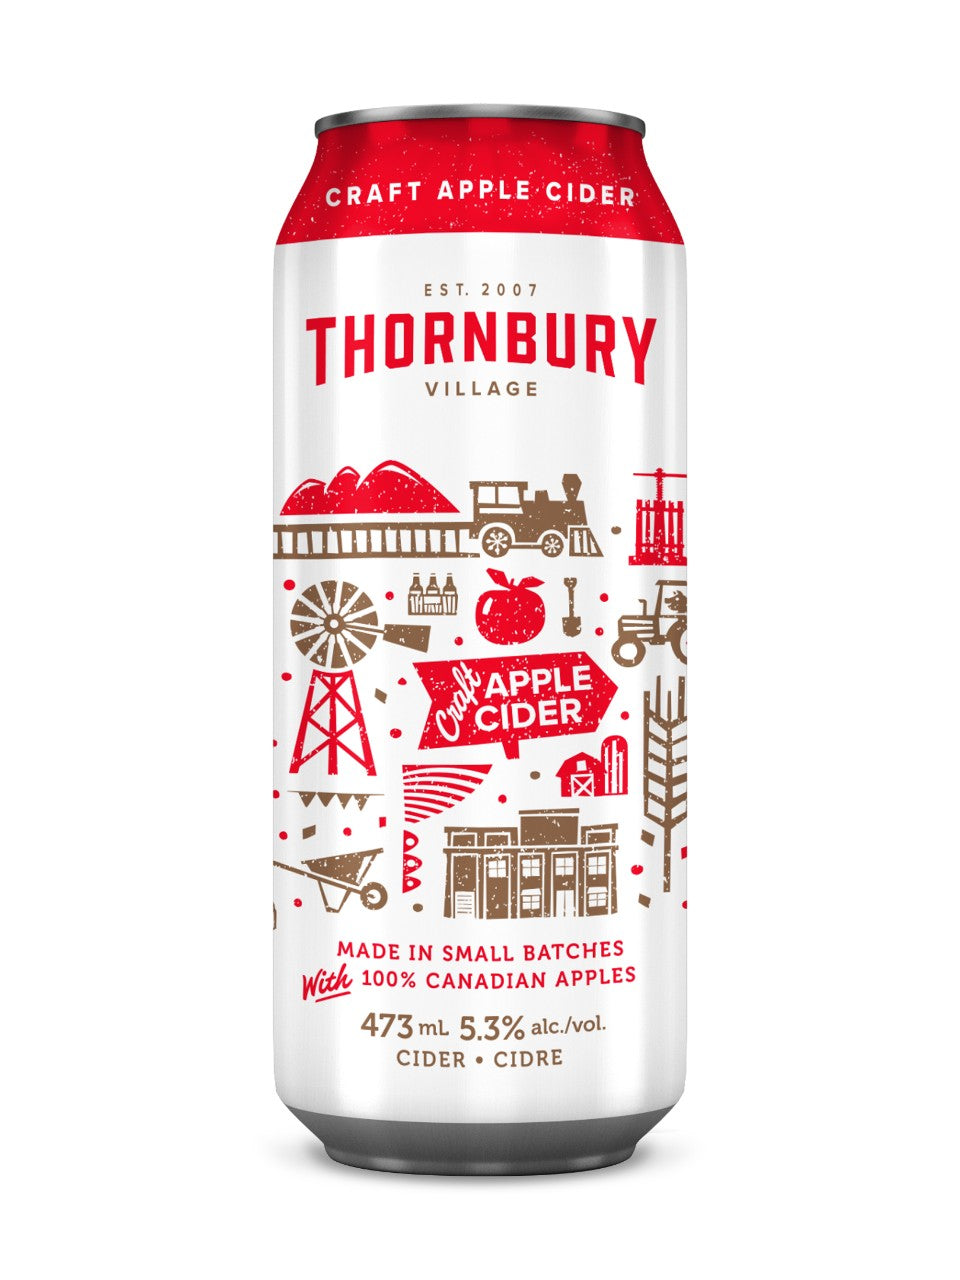 Thornbury Village Craft Apple Cider 473 mL can